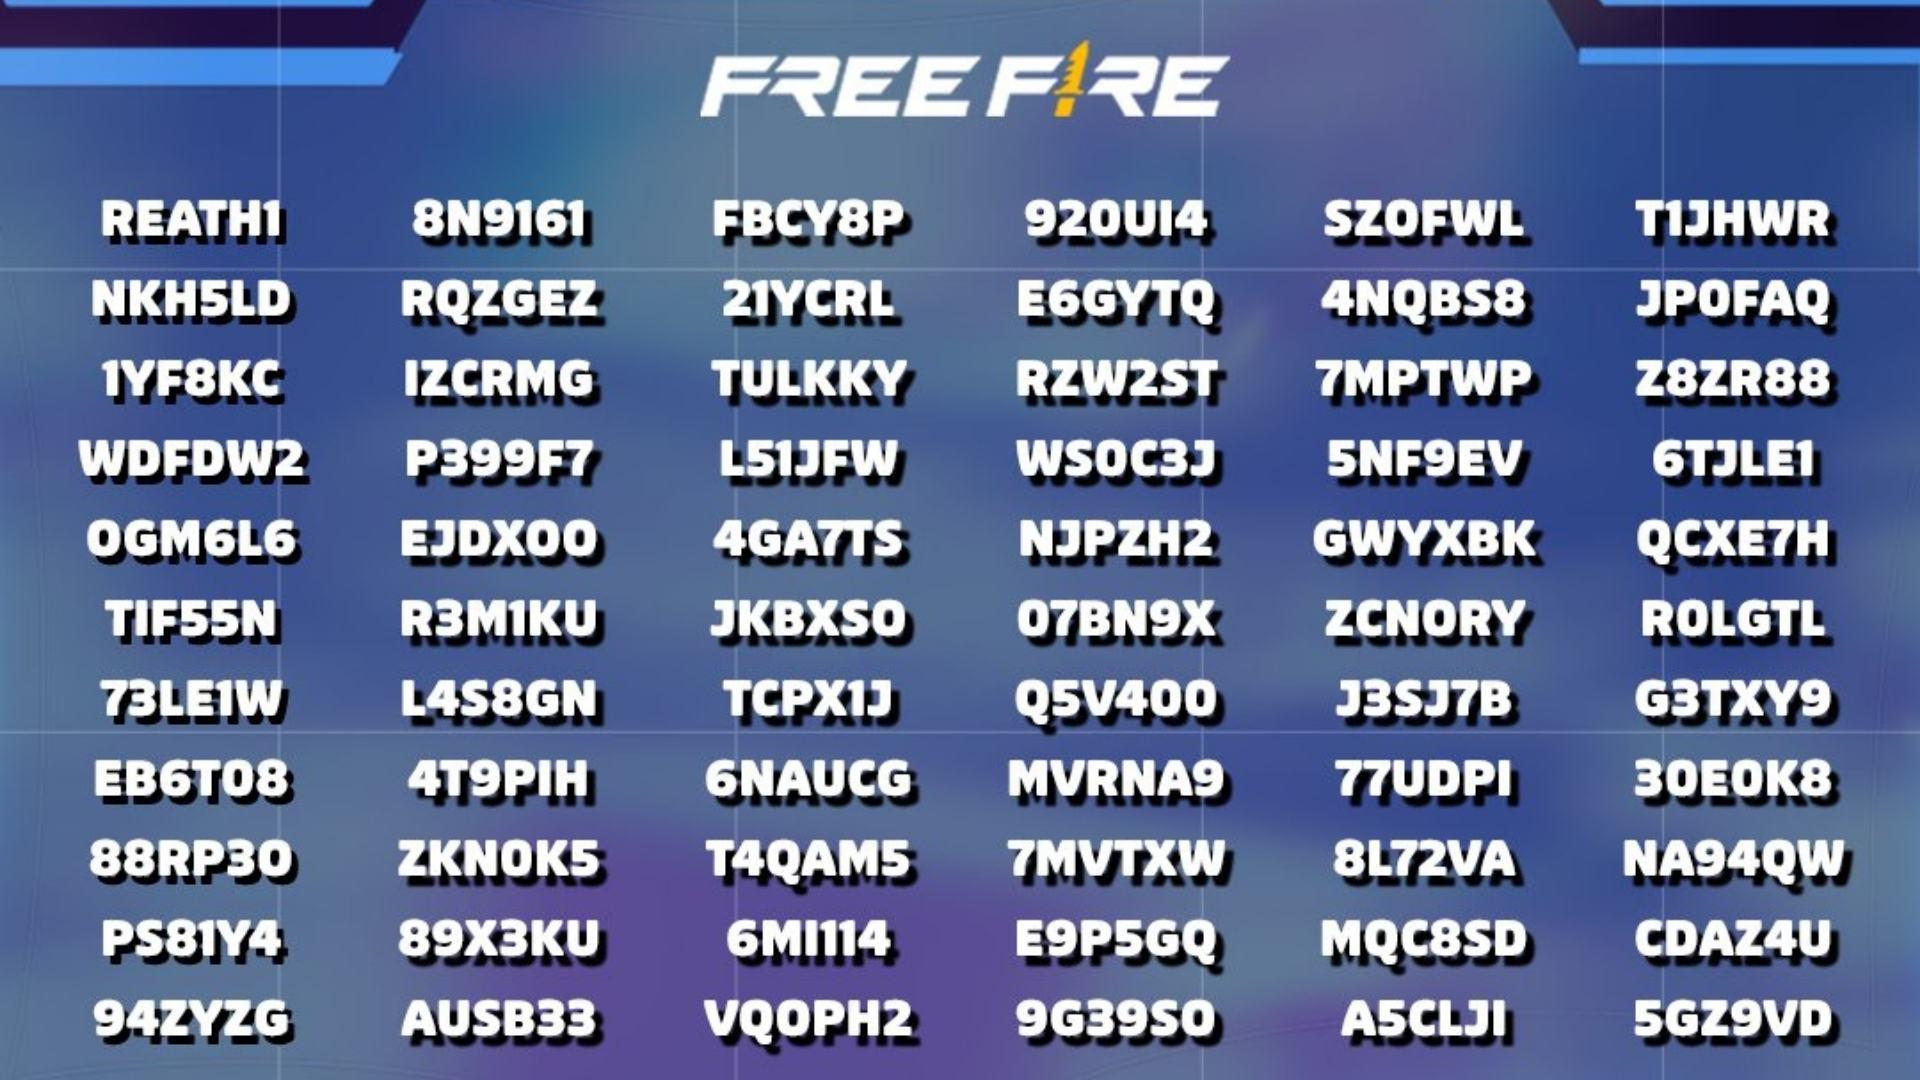 Garena Free Fire: Verifique a Lista de Códigos FF disponíveis para